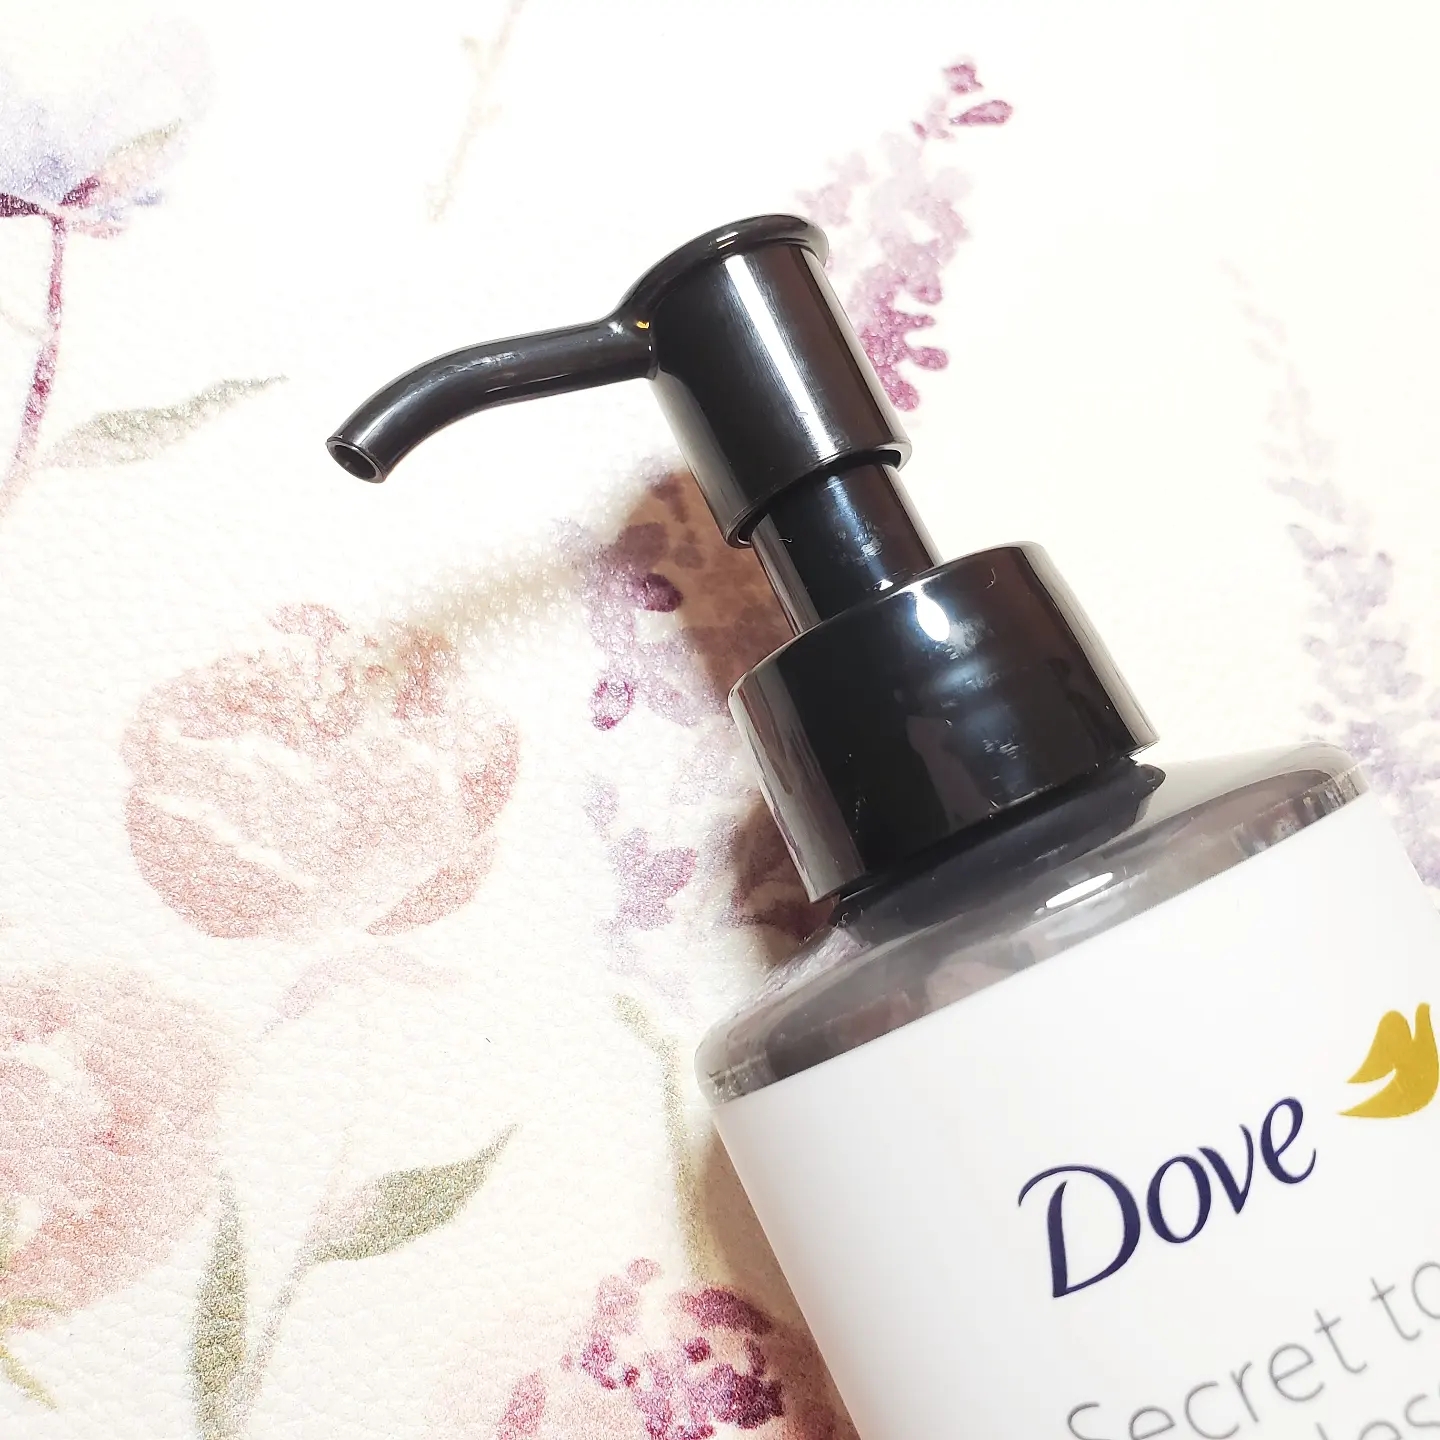 Dove(ダヴ) 吸着毛穴ケア 洗顔ジェルの良い点・メリットに関するありんこさんの口コミ画像2